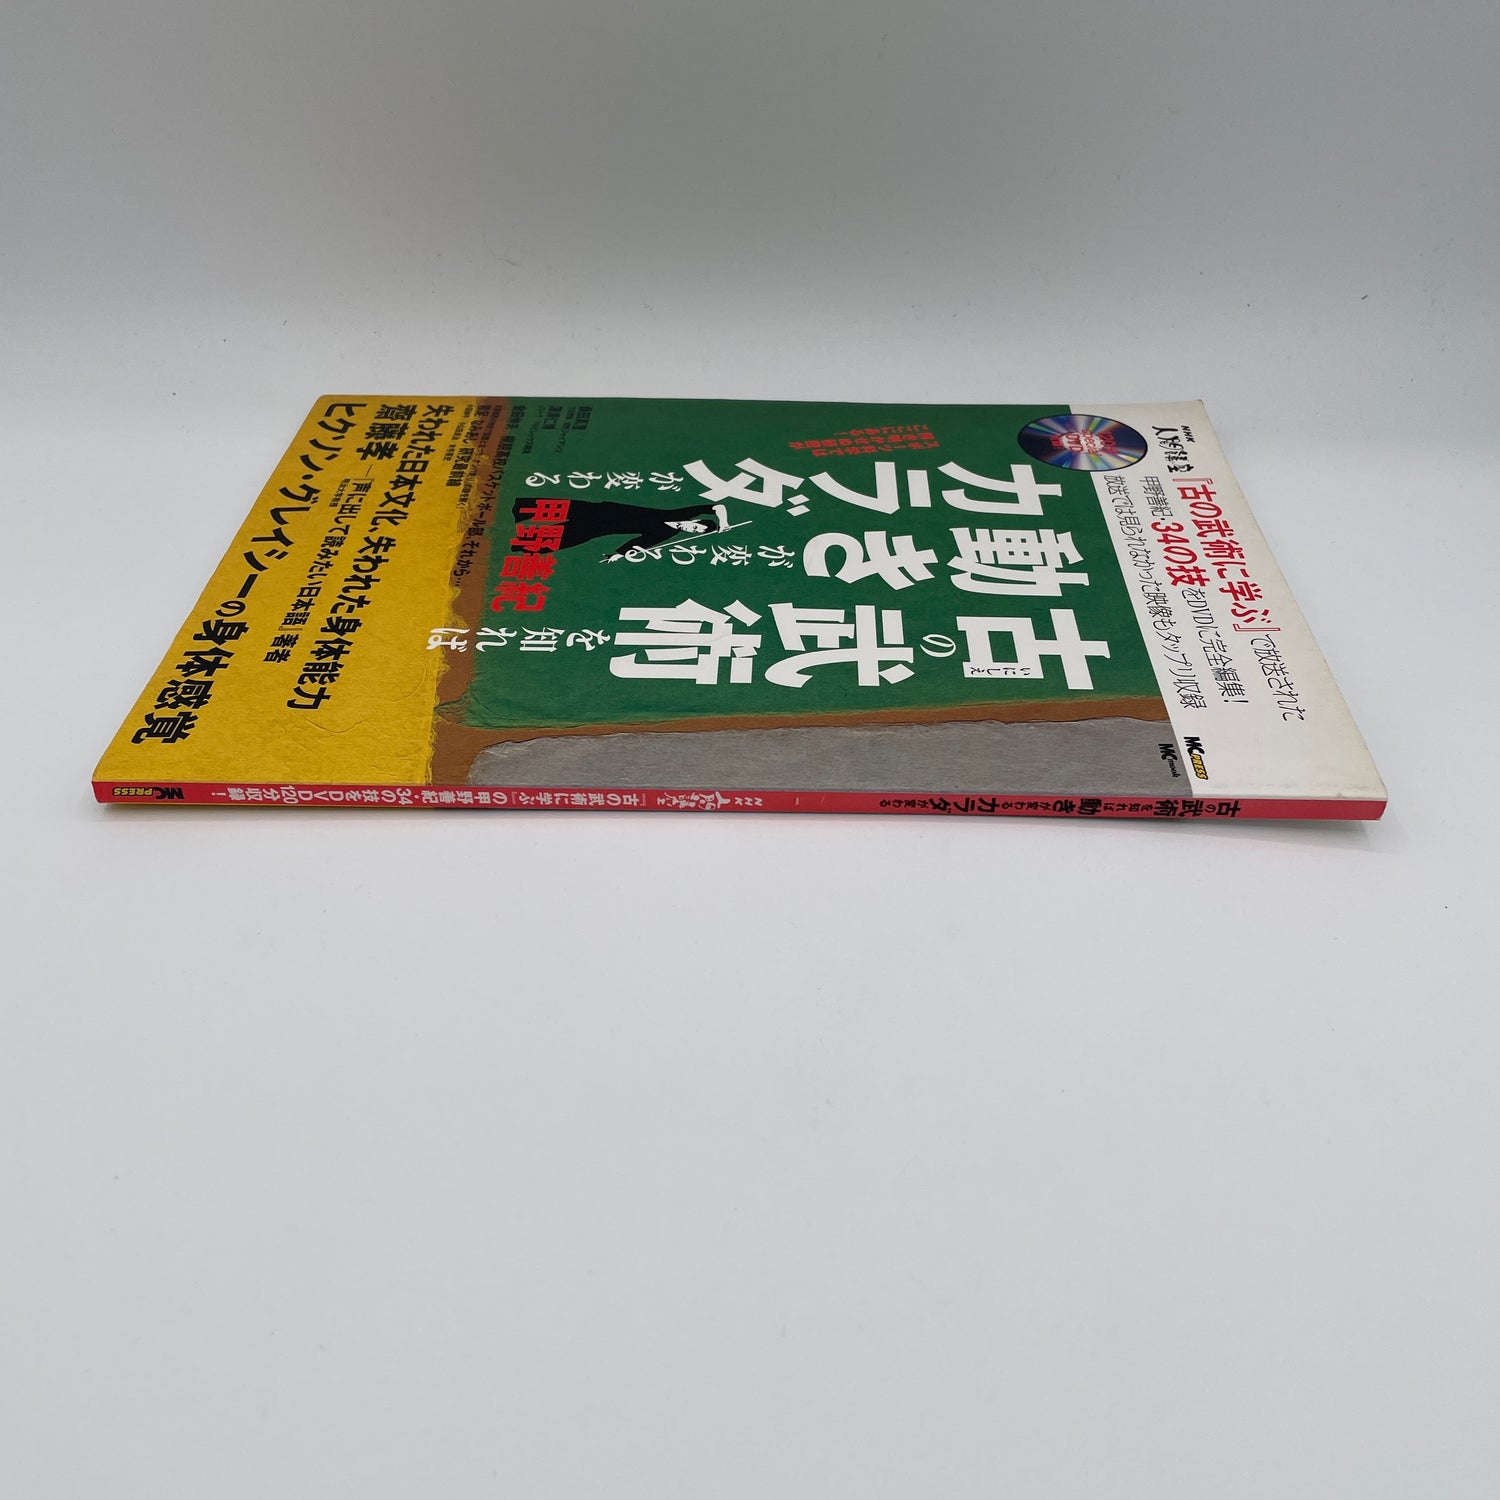 Build Your Body With Kobujutsu Book & DVD by Yoshinori Kono (Preowned)